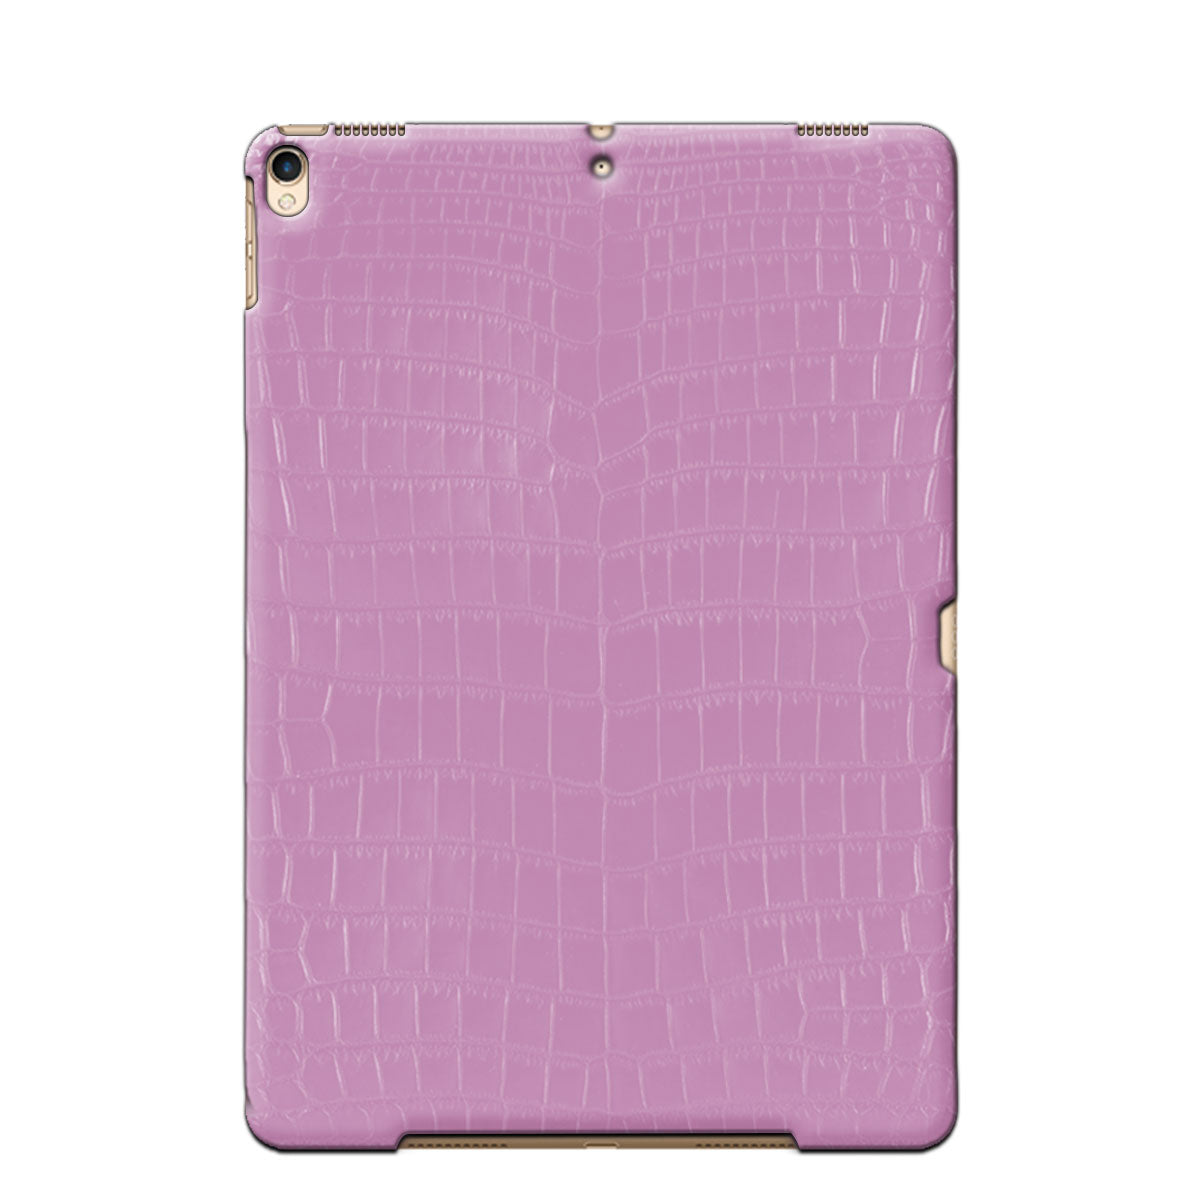 Coque / Cover cuir pour iPad Pro 10.5 & 11 pouces ( 2e / 3e / 4e génération ) - Alligator